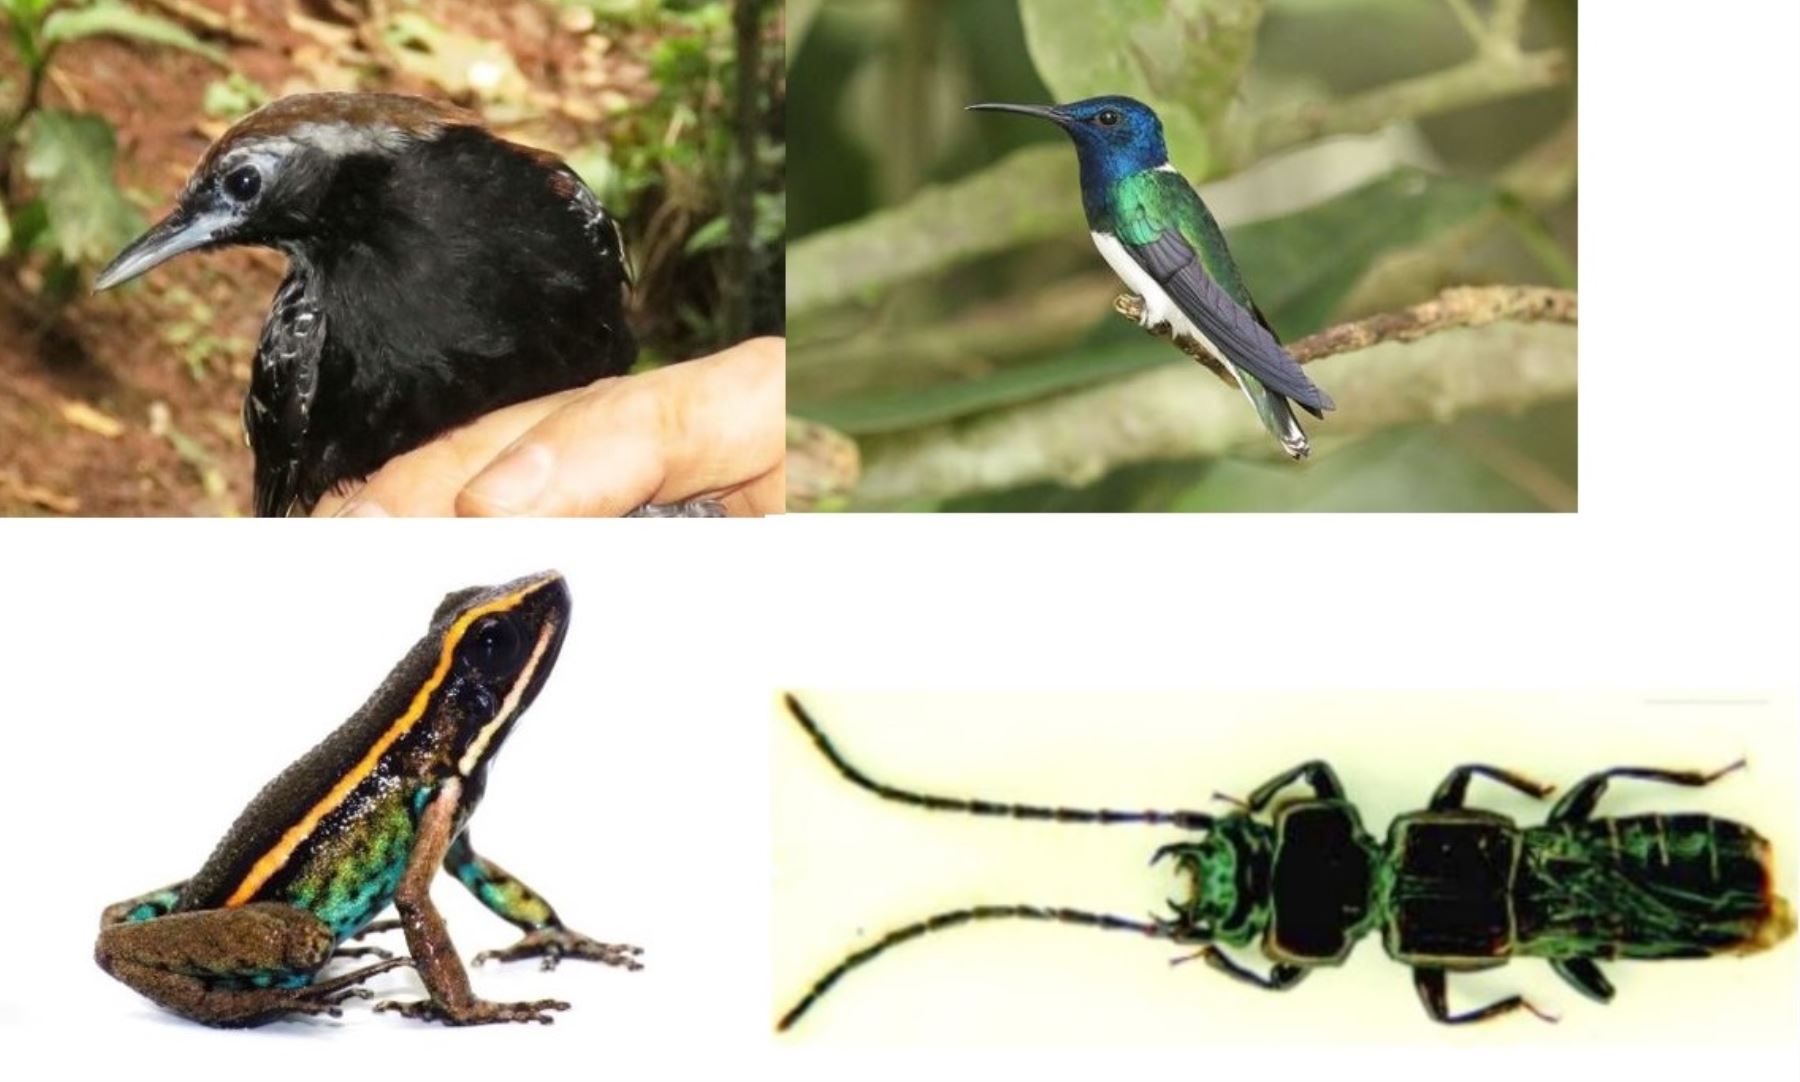 Estas son las especies de fauna silvestre descubiertas por la ciencia en territorio peruano durante el 2017.